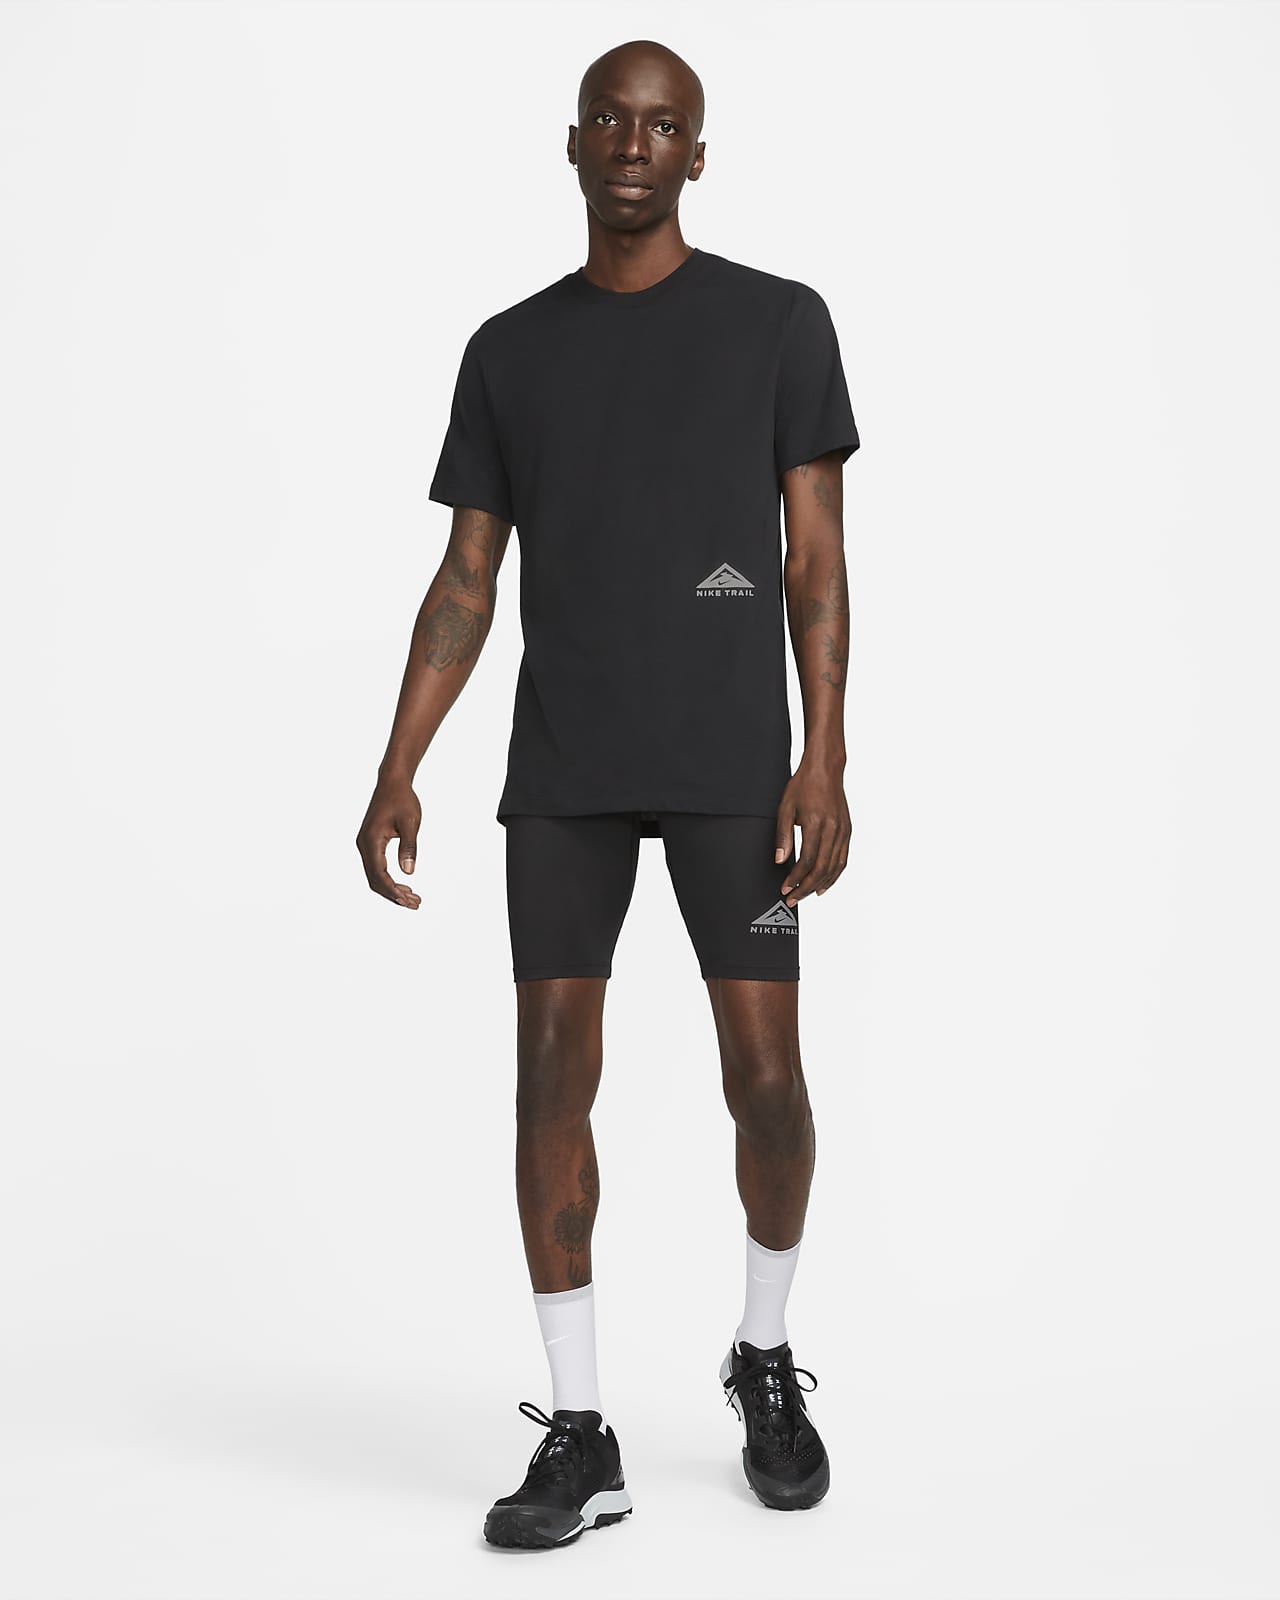 Running Shorts Tights & Leggings. Nike CA